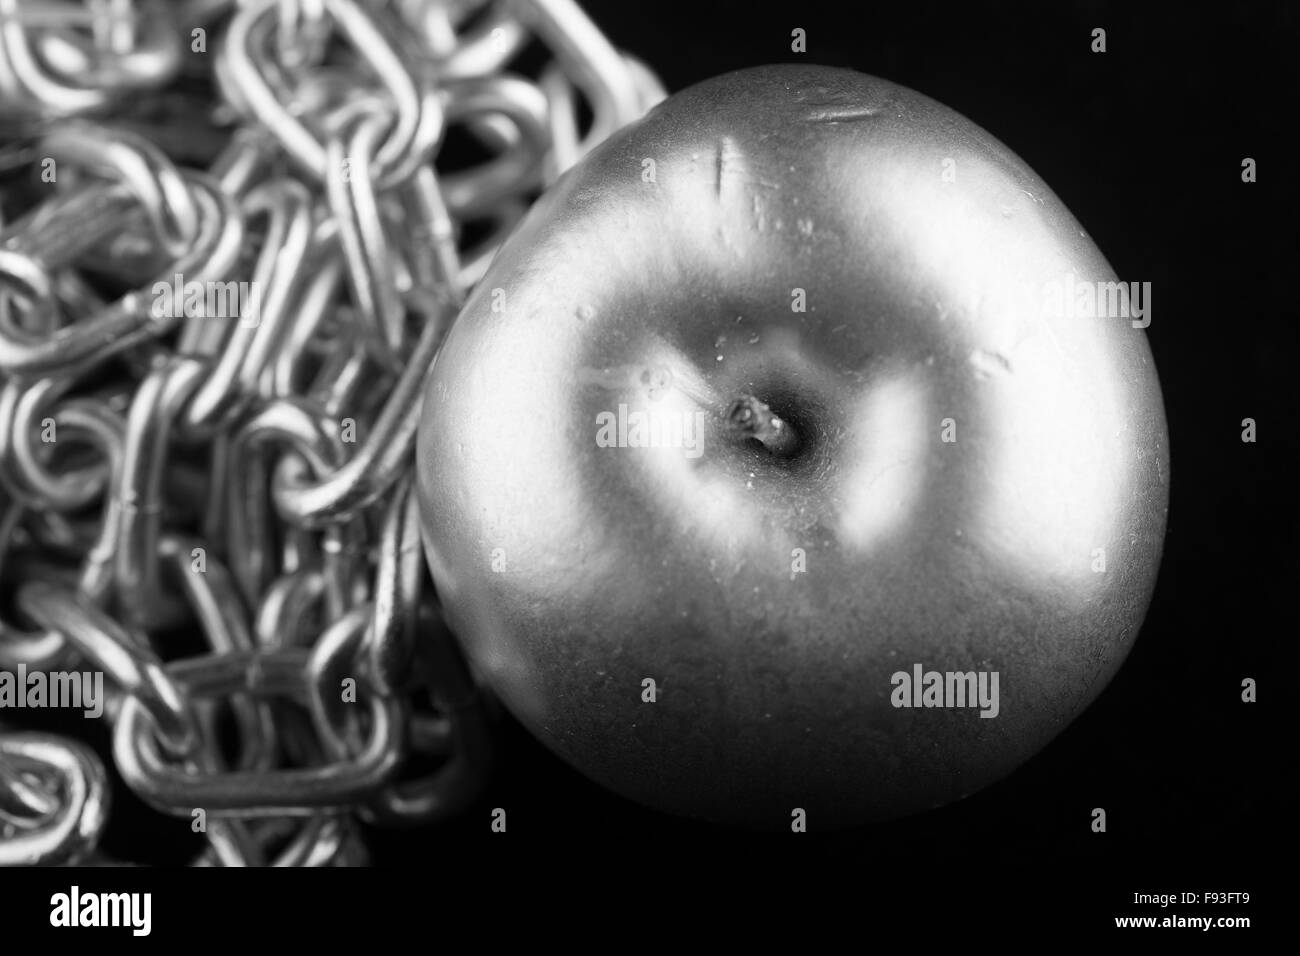 De couleur argent métallique et gros plan de la chaîne d'apple sur fond noir Banque D'Images